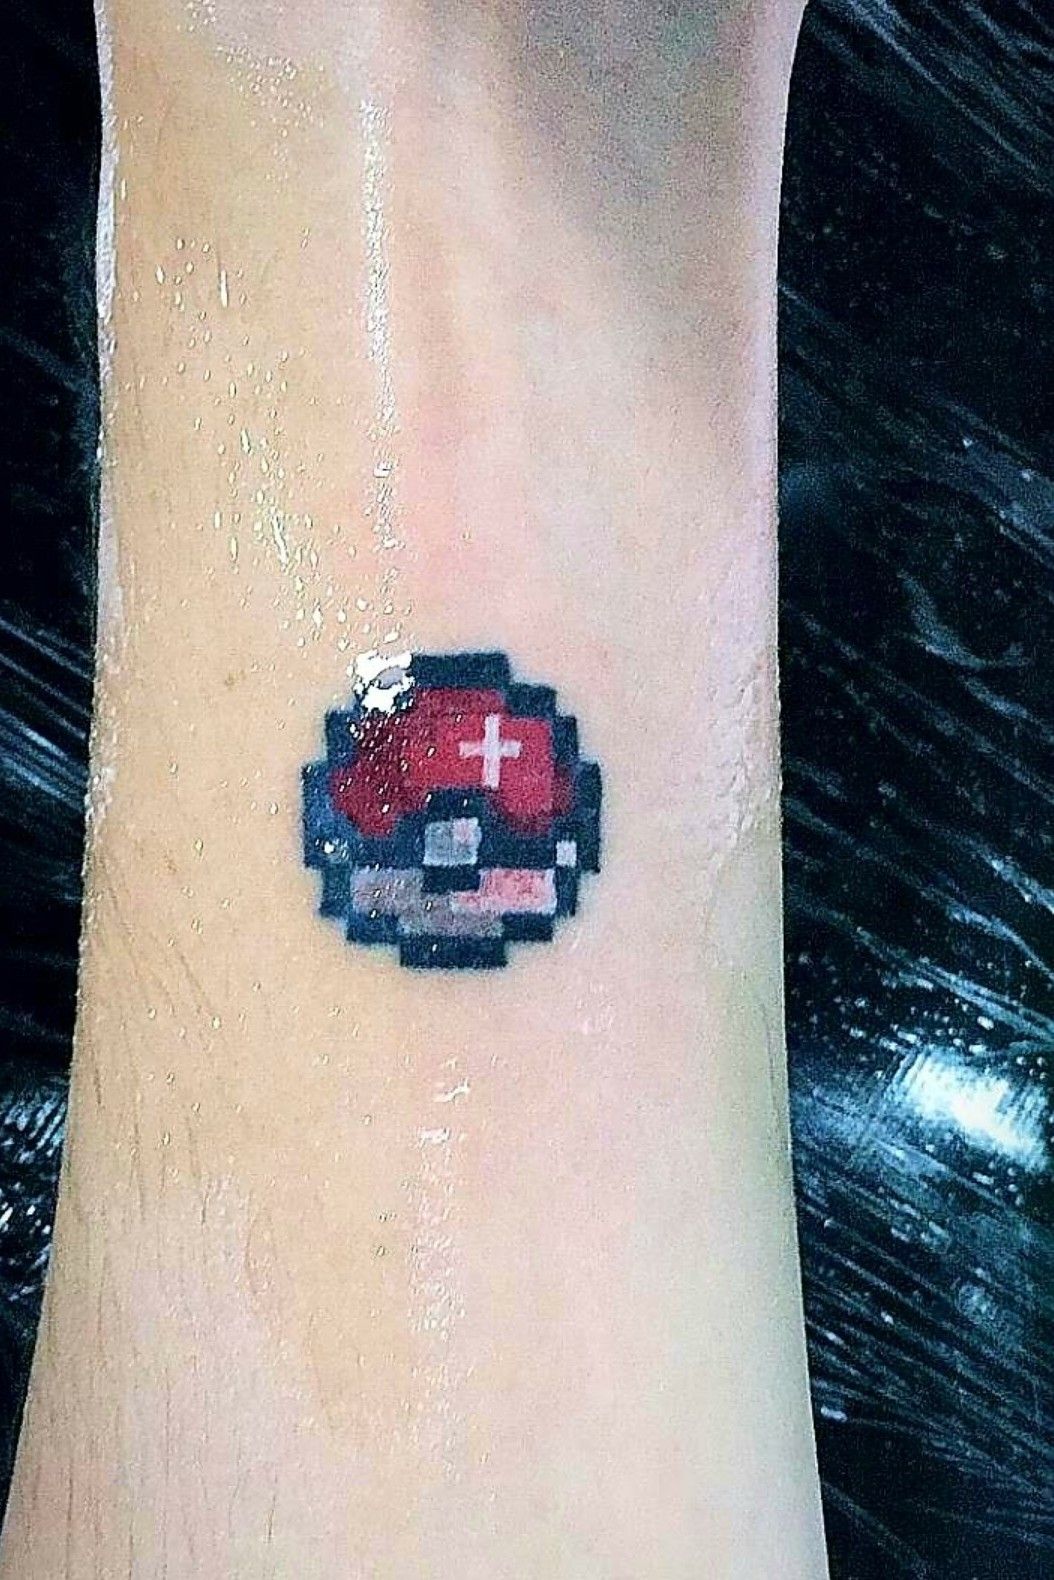 Tattoo uploaded by Daniel Ito • Pokémon - Poké ball #pokémon #pokemon # pokeball #pokebola • Tattoodo